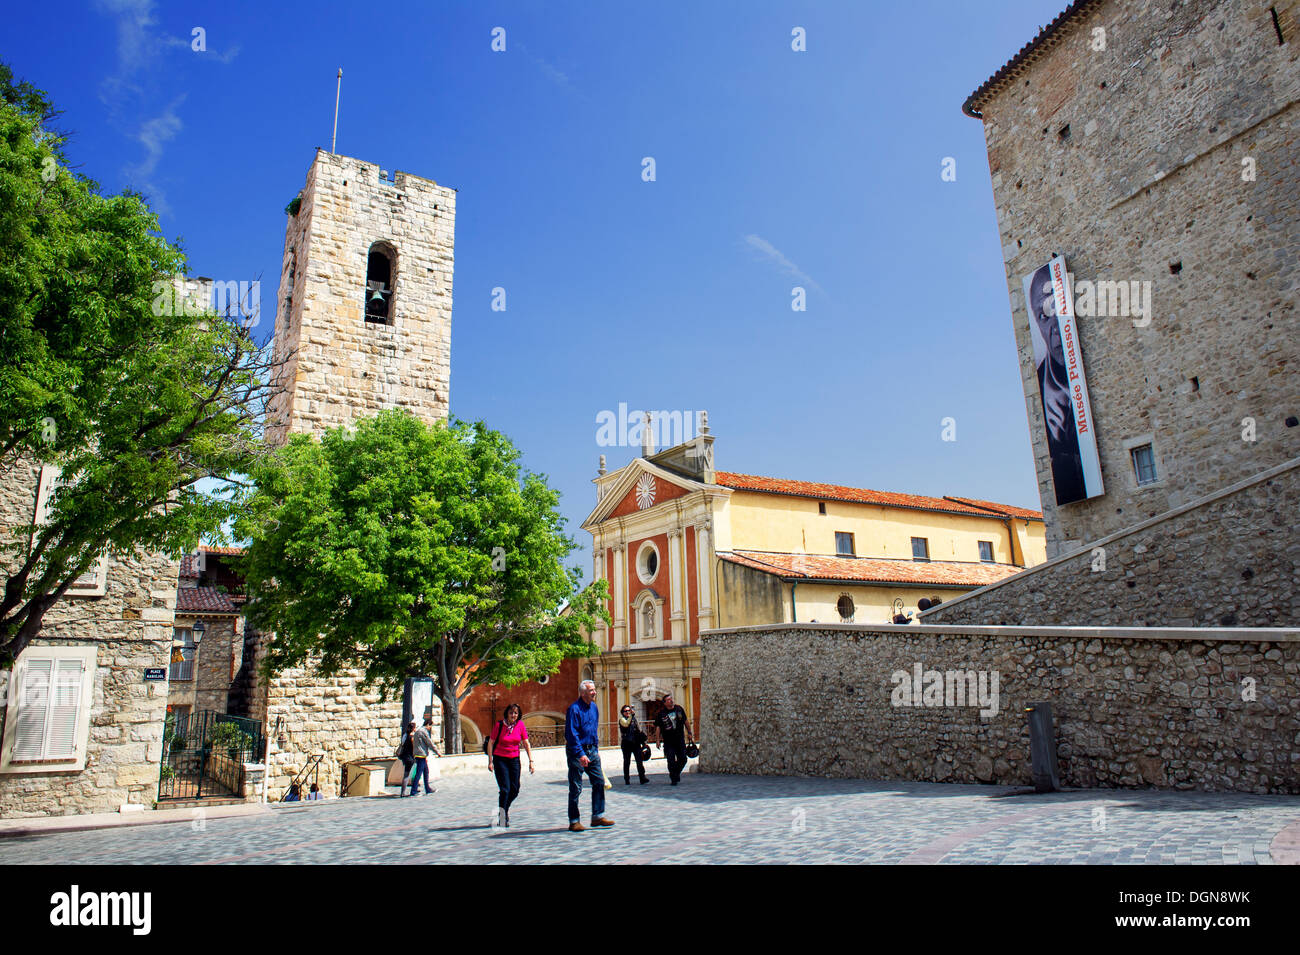 L'Europa, Francia, Alpes-Maritimes, Antibes. Place Mariejol. Il Museo di Picasso nel castello Grimaldi e la cattedrale. Foto Stock